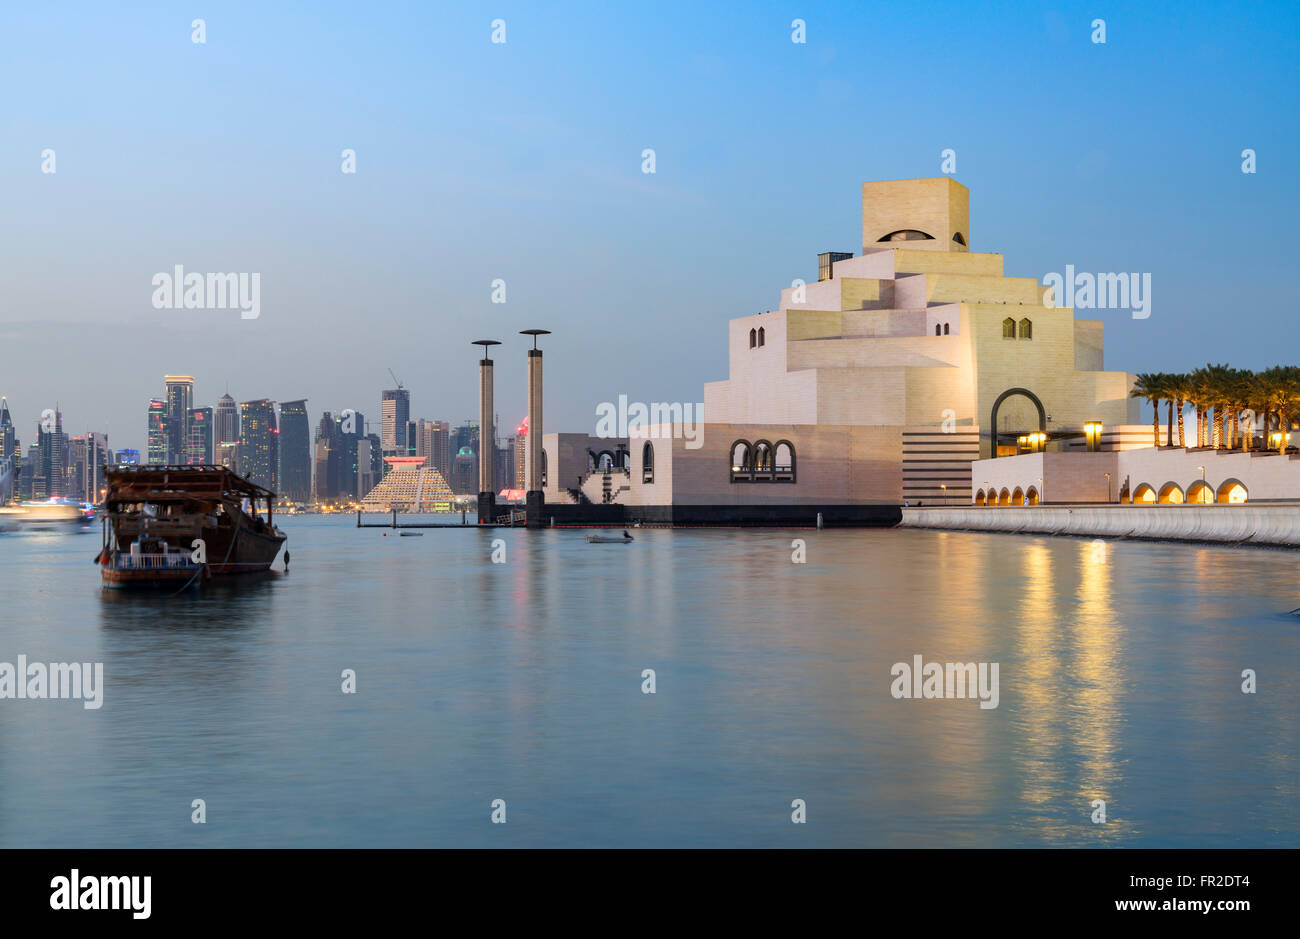 Nachtansicht des Museums für islamische Kunst in Doha Katar Stockfoto